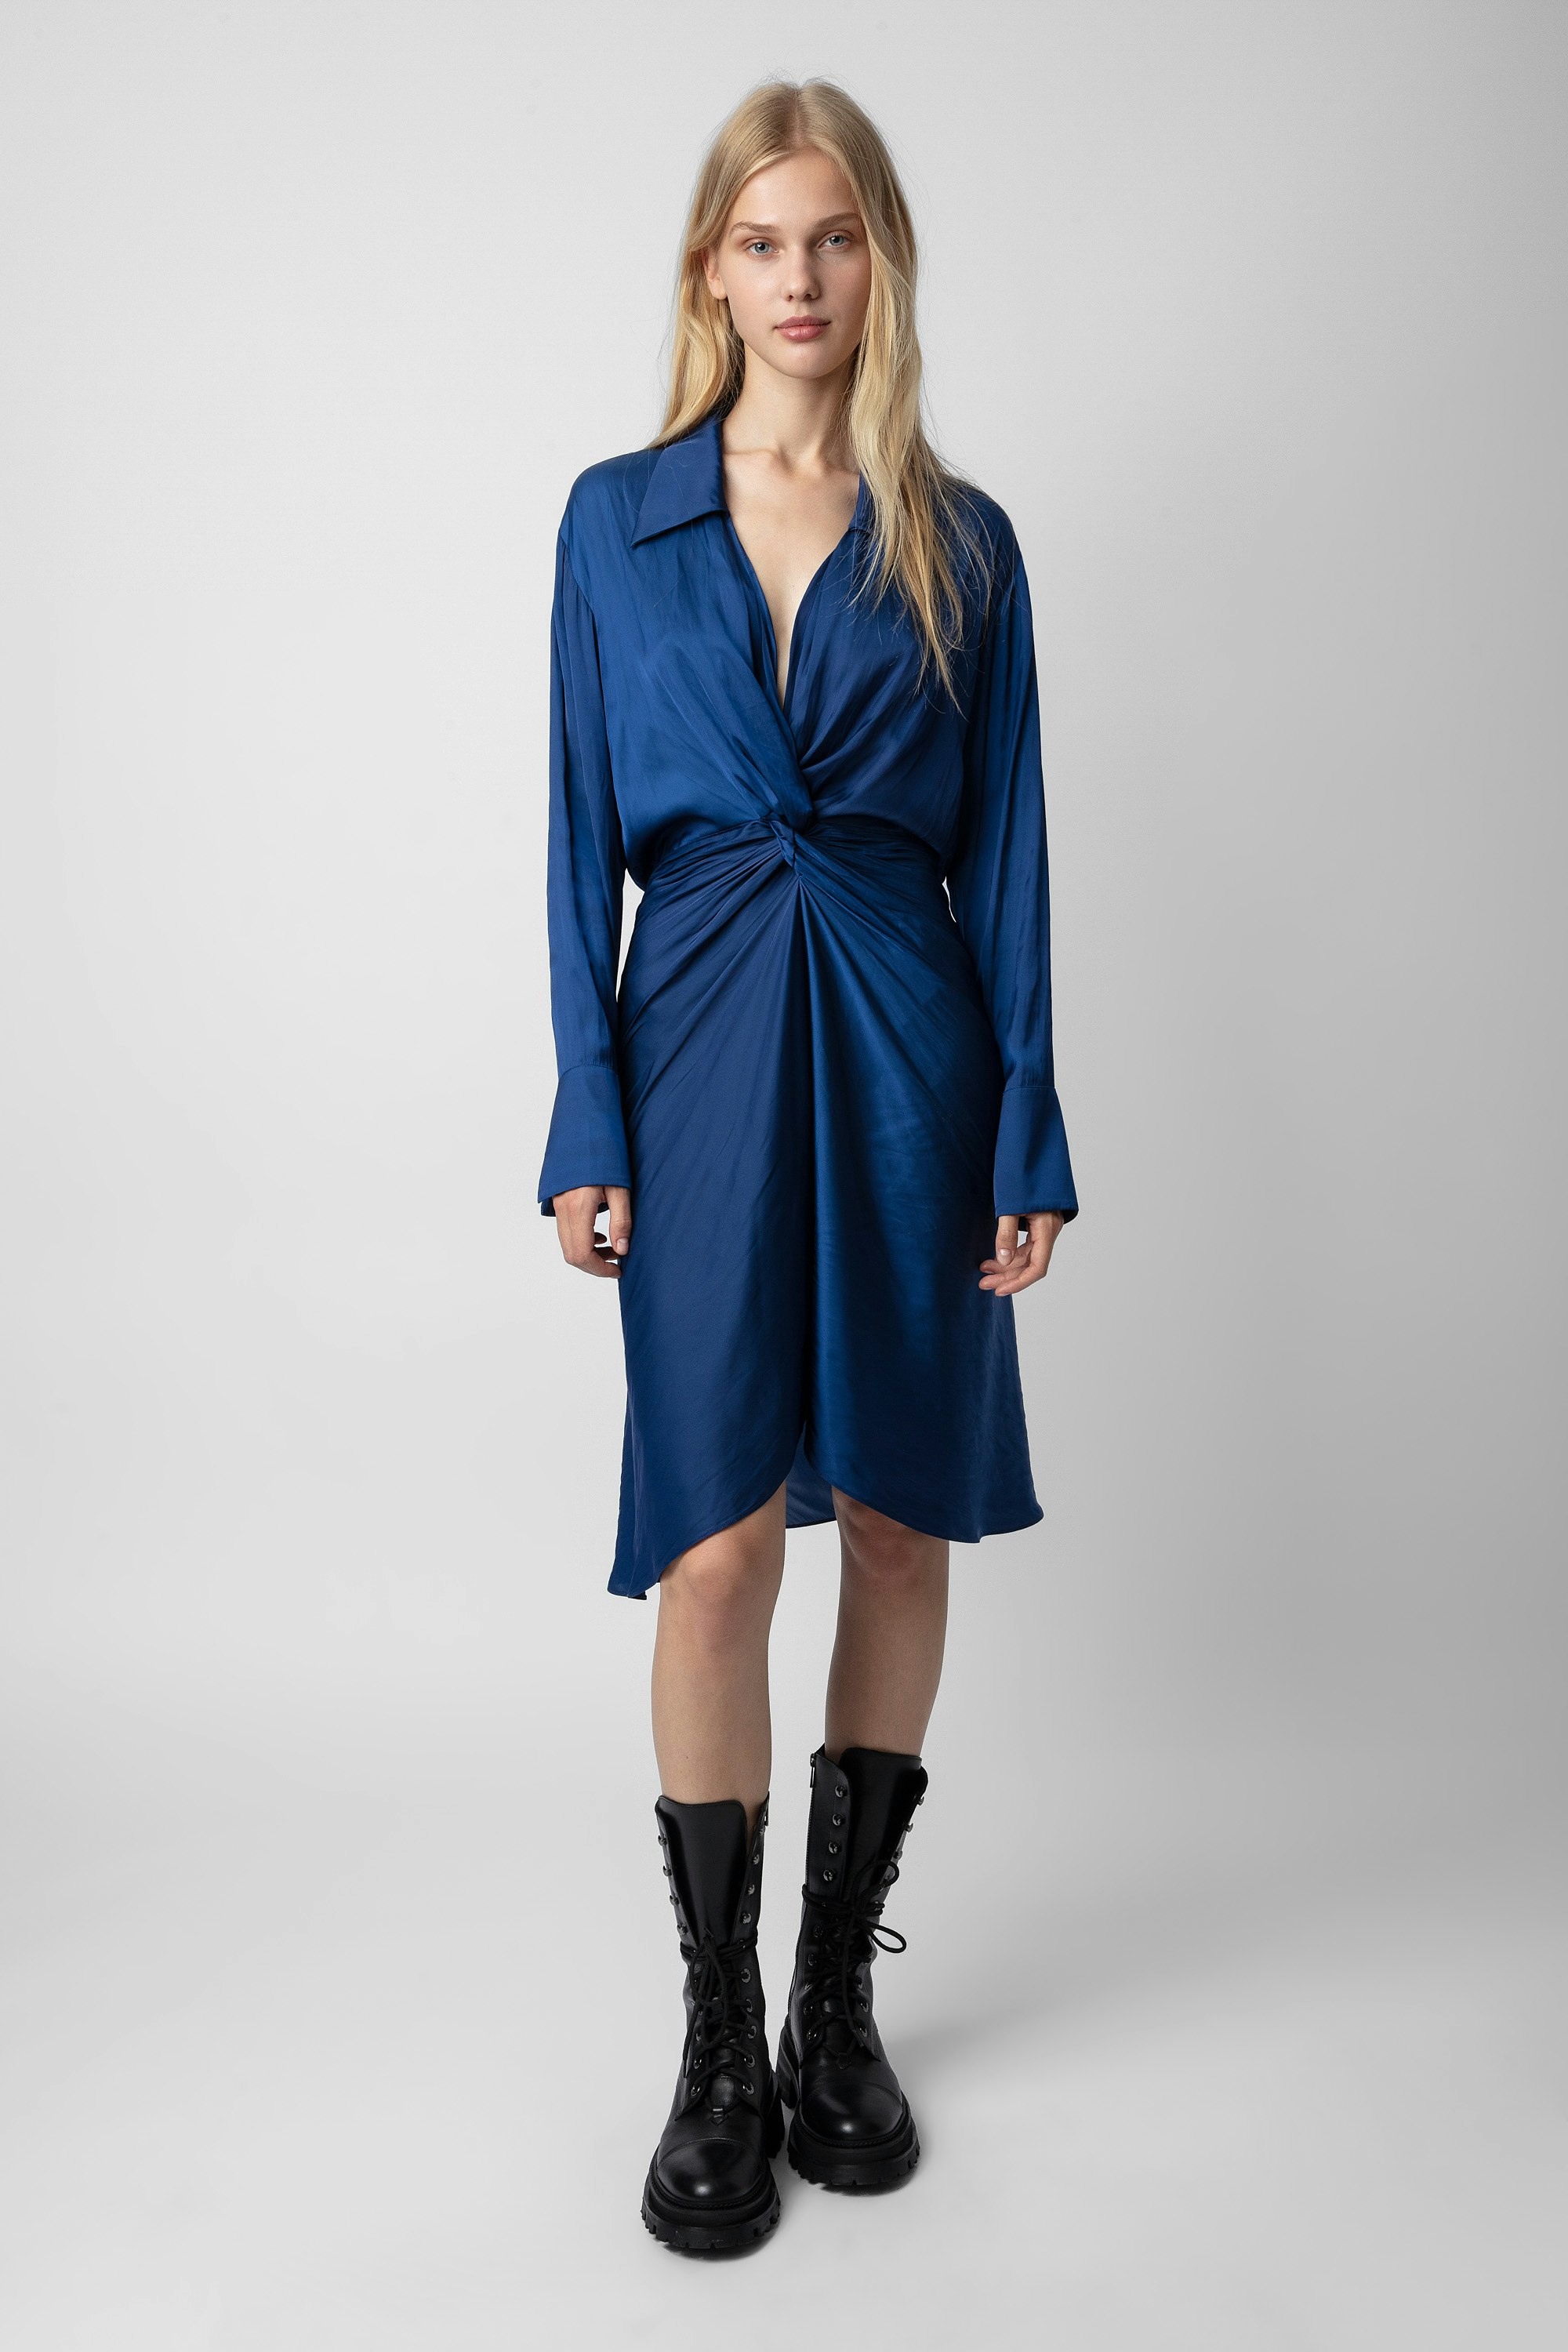 Kleid Rozo Satin - Halblanges, an der Taille drapiertes Damenkleid aus Satin in Königsblau.